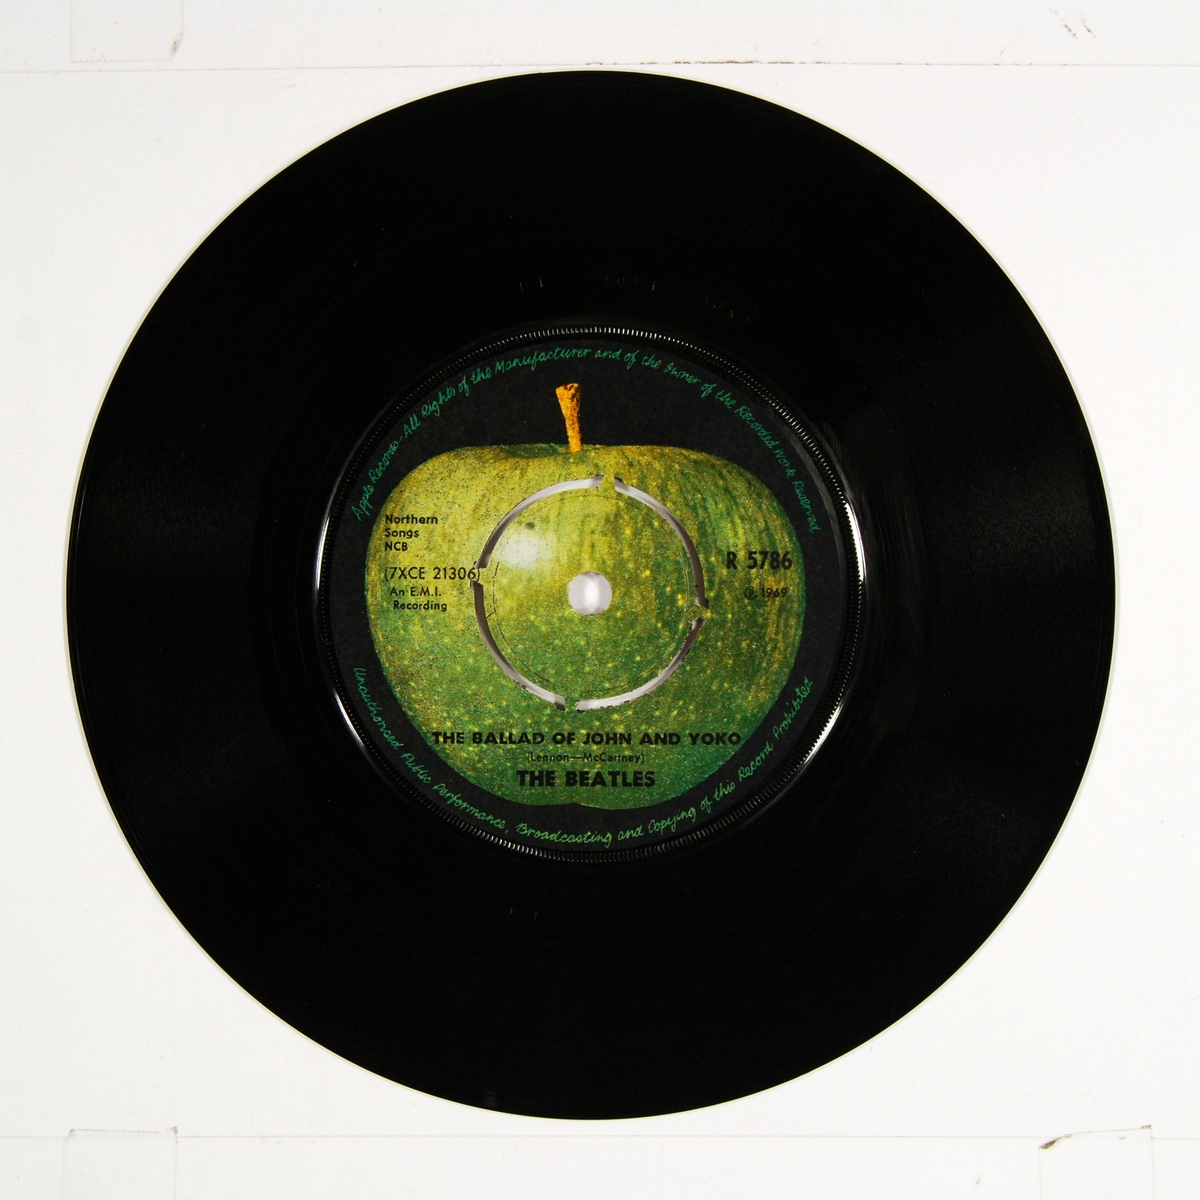 Fotografi av "The Beatles" på coveret. Plateetiketten viser et grønt eple på A-siden og et delt eple på B-siden.